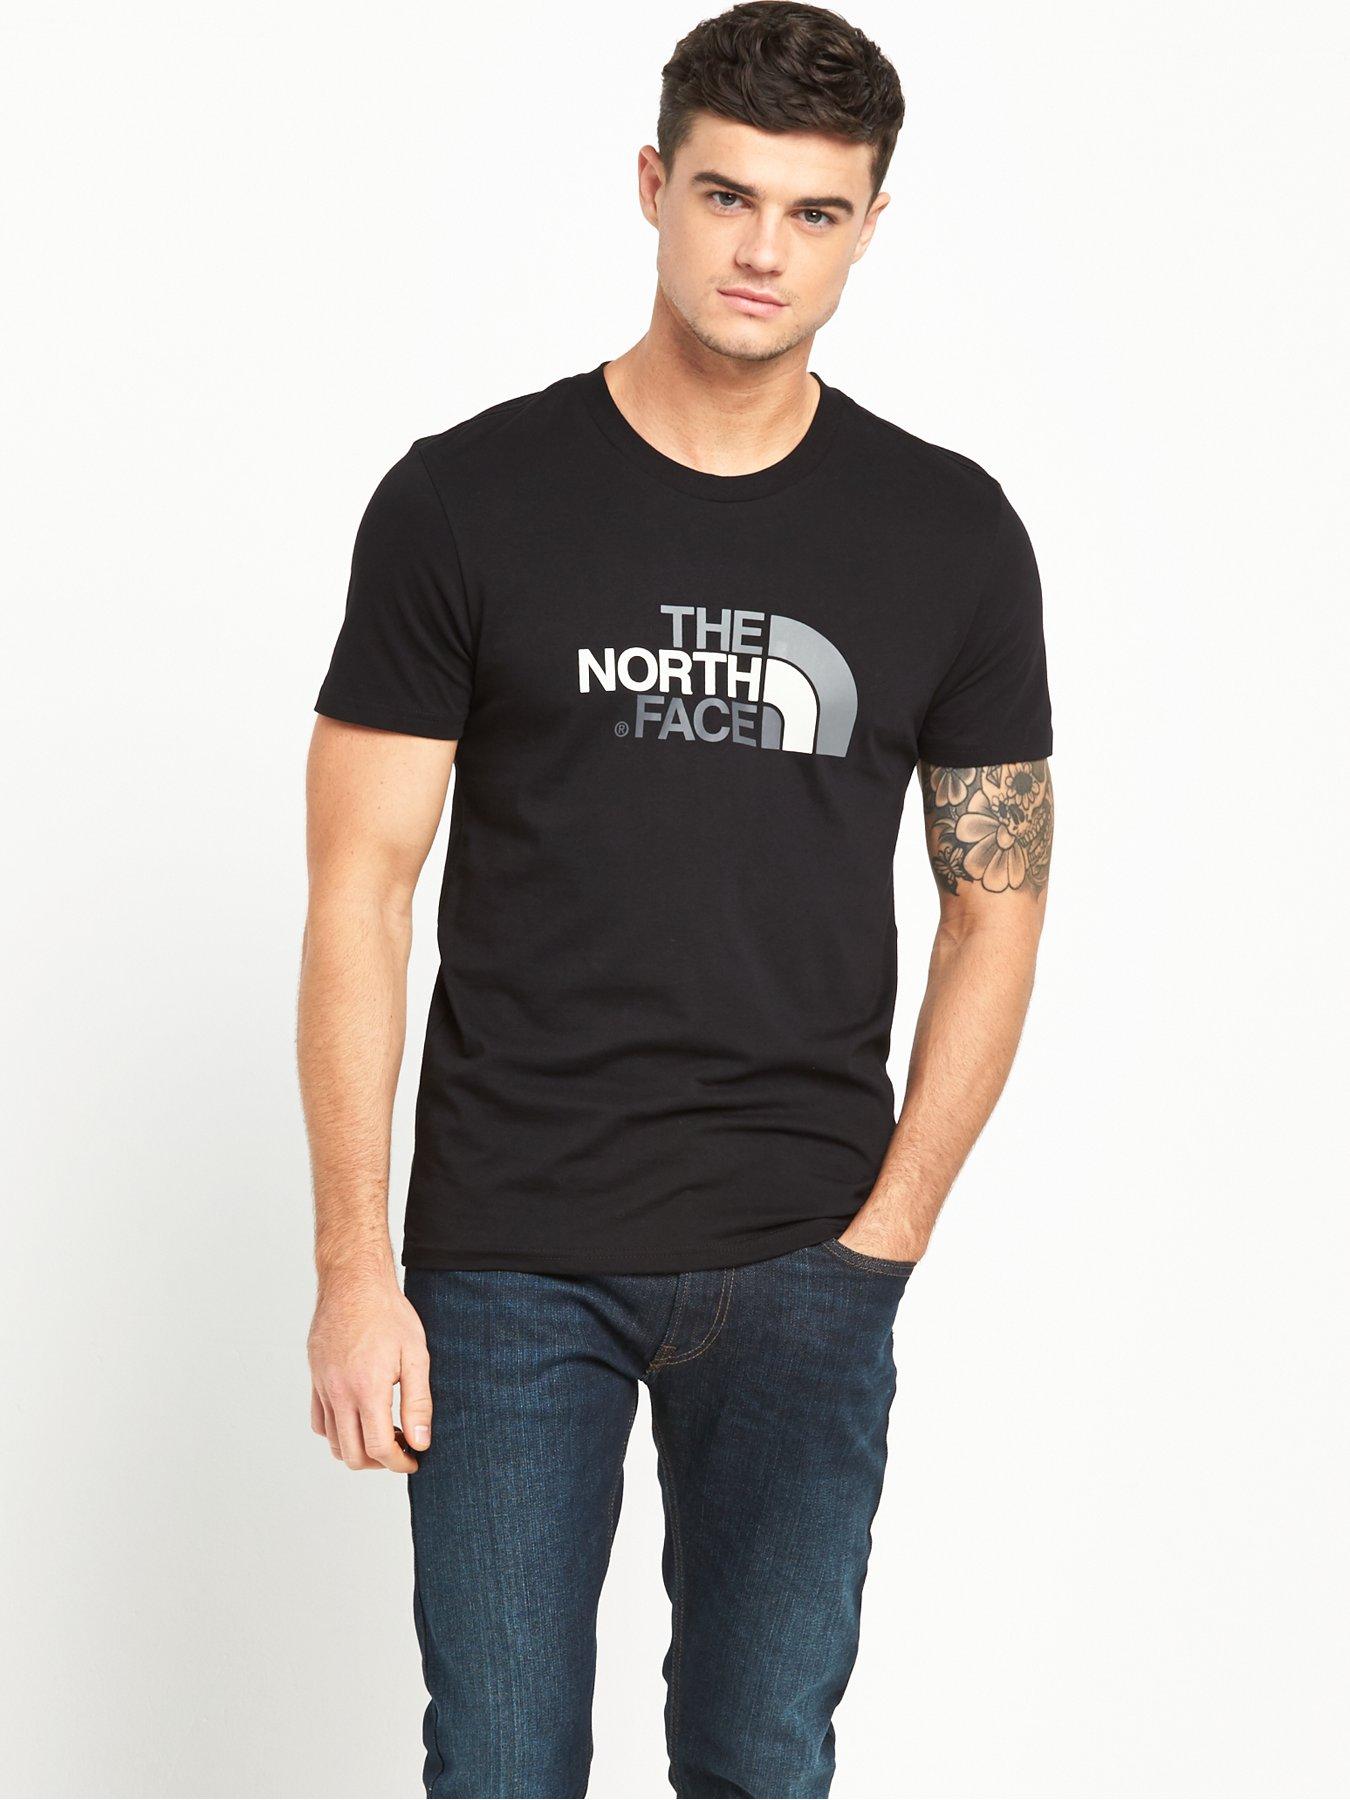 northface shirt